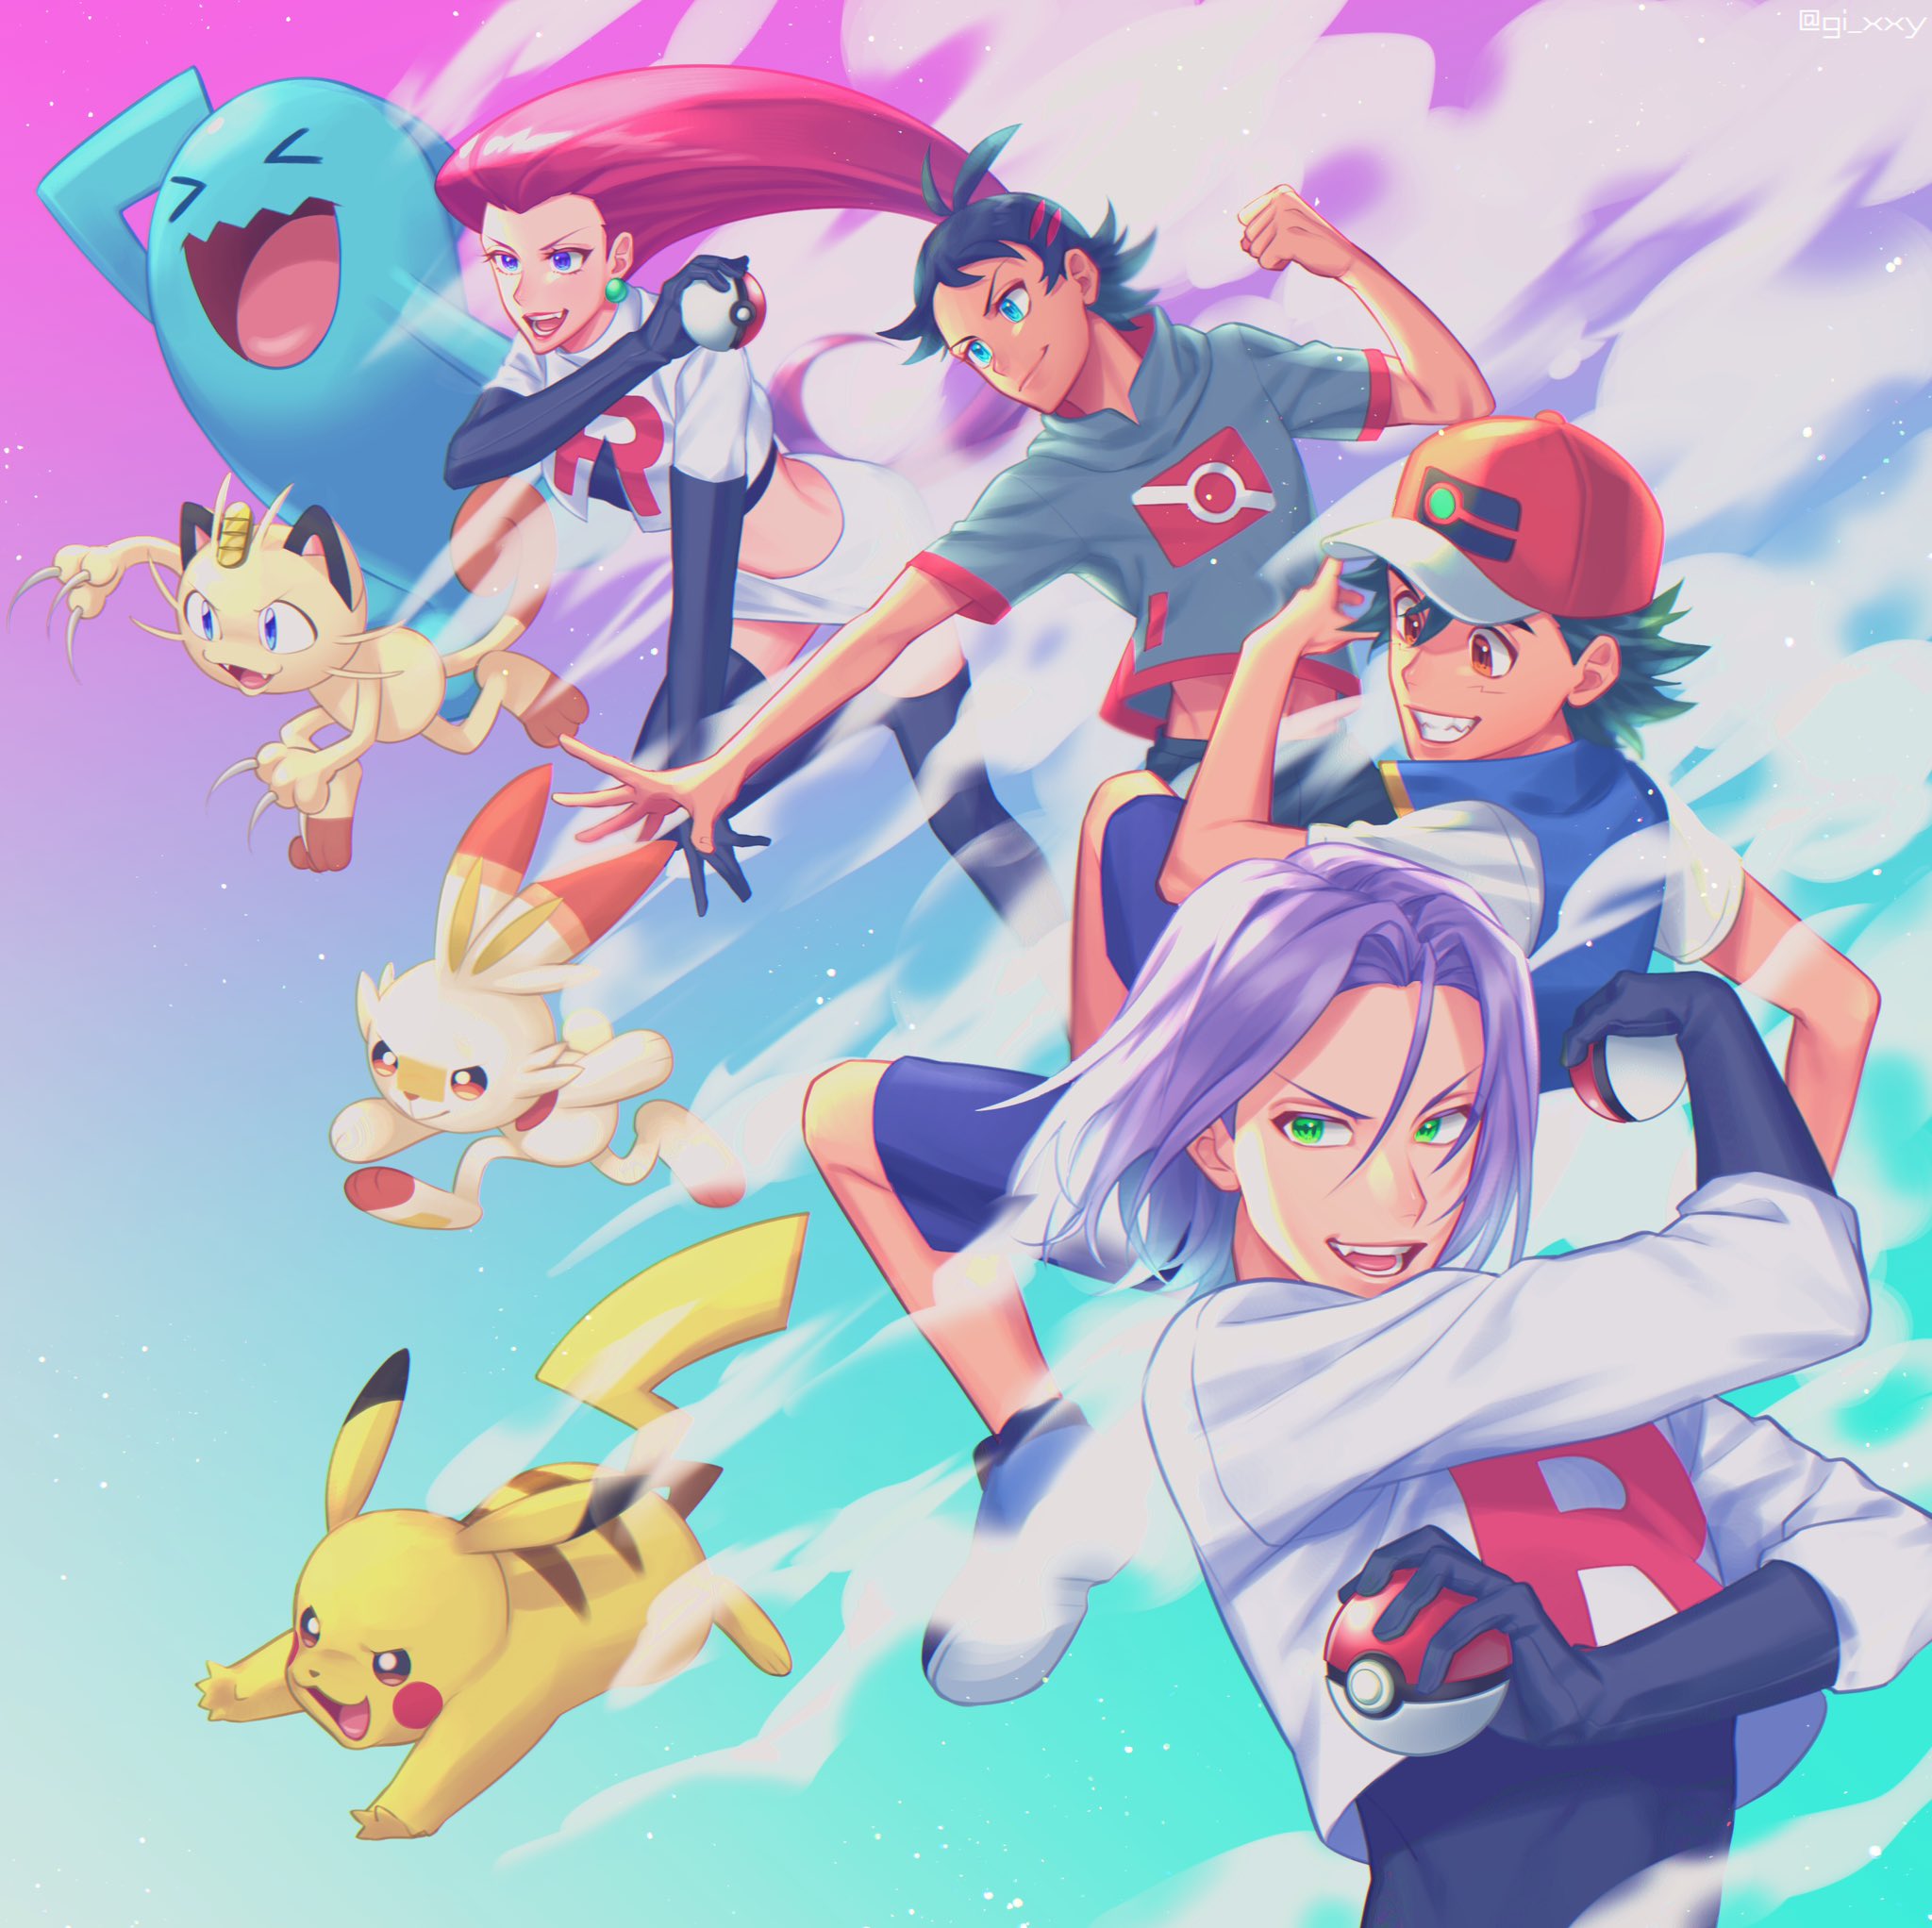 Anime Pokémon Art by gi_xxy